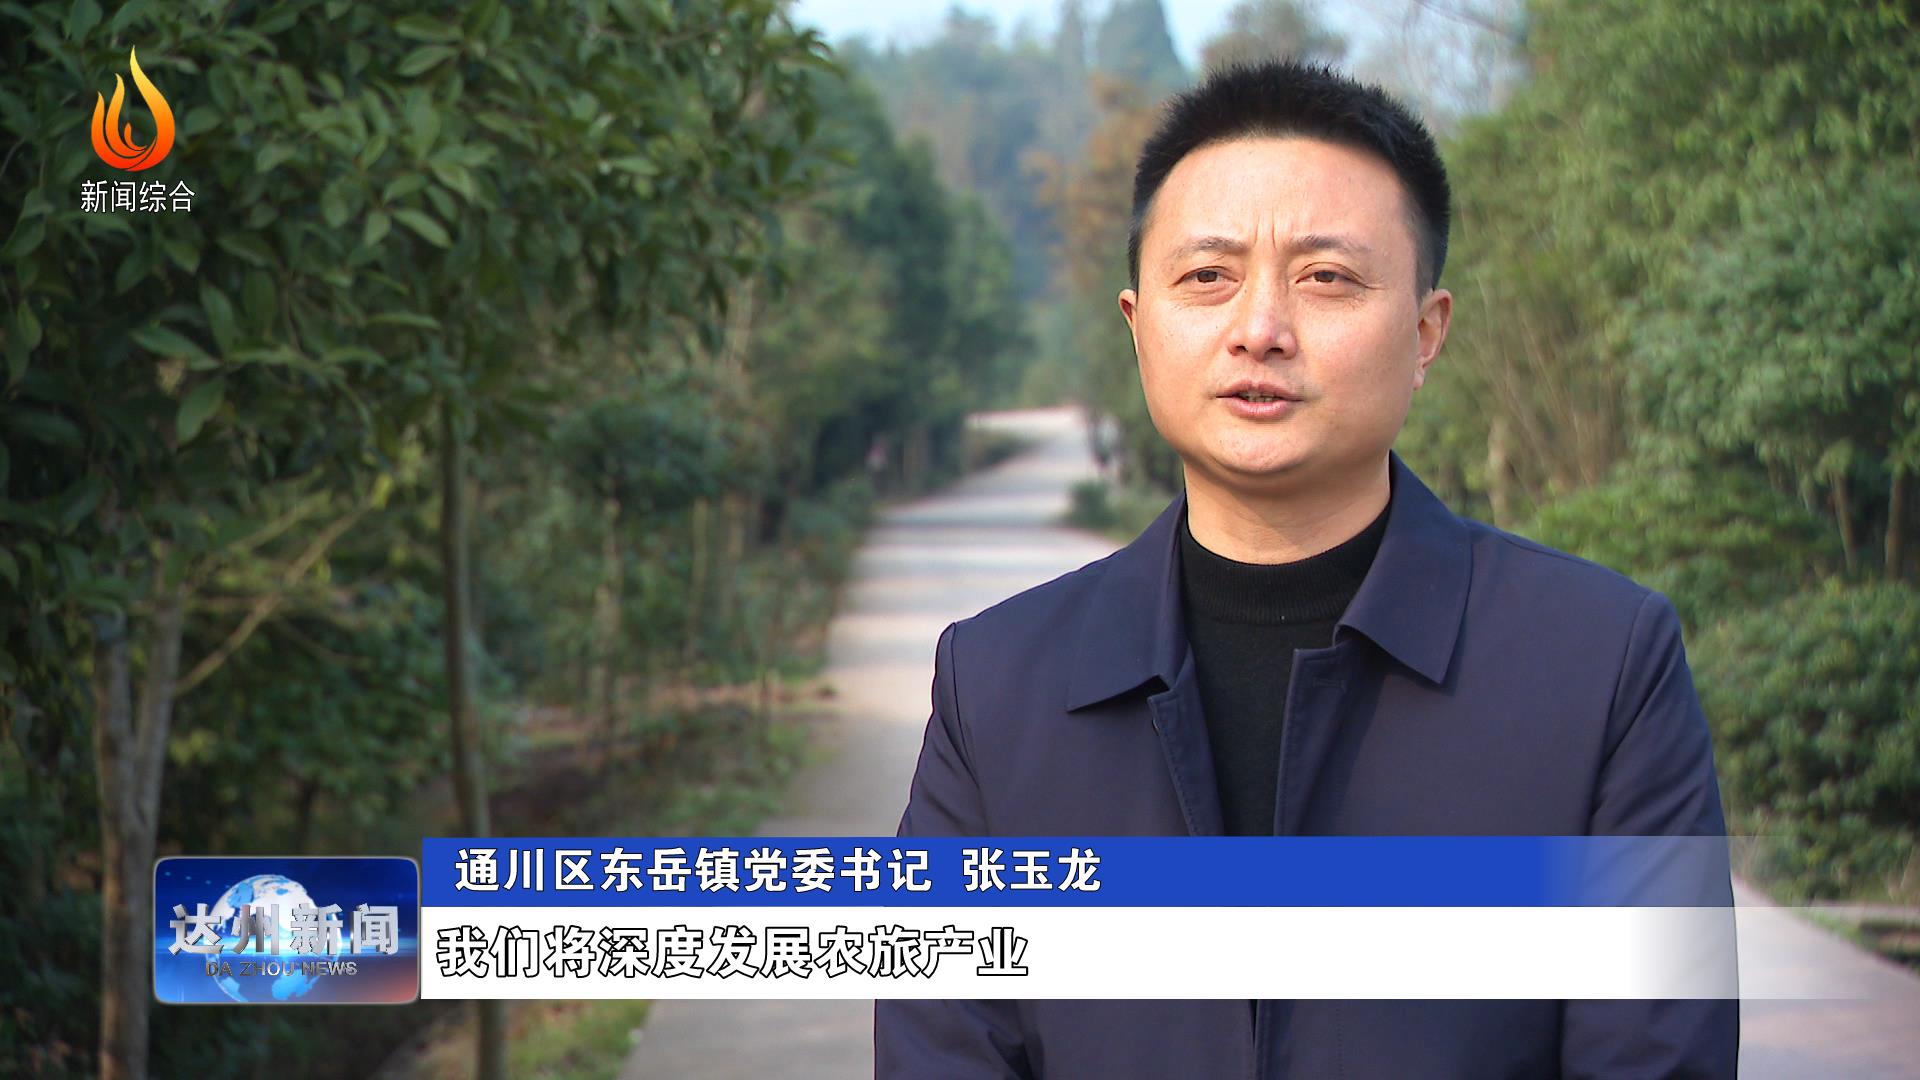 通川区东岳镇党委书记 张玉龙:我们将深度发展农旅产业,让我们凤凰村